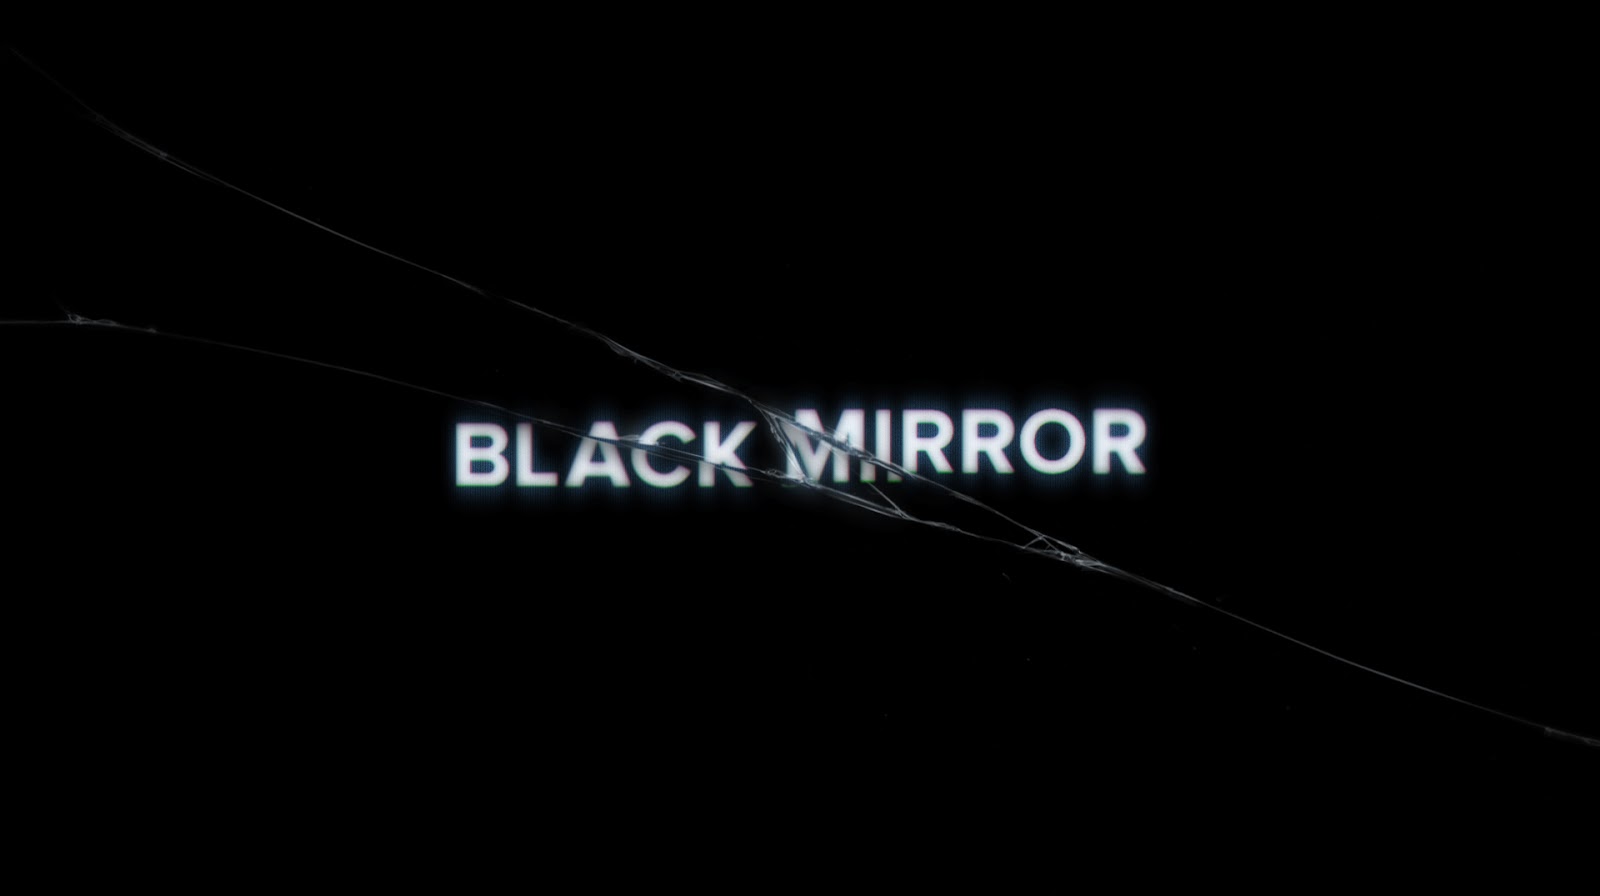 Black Mirror – Info de la serie Black Mirror – Curiosidades, noticias y podcast de Black Mirror